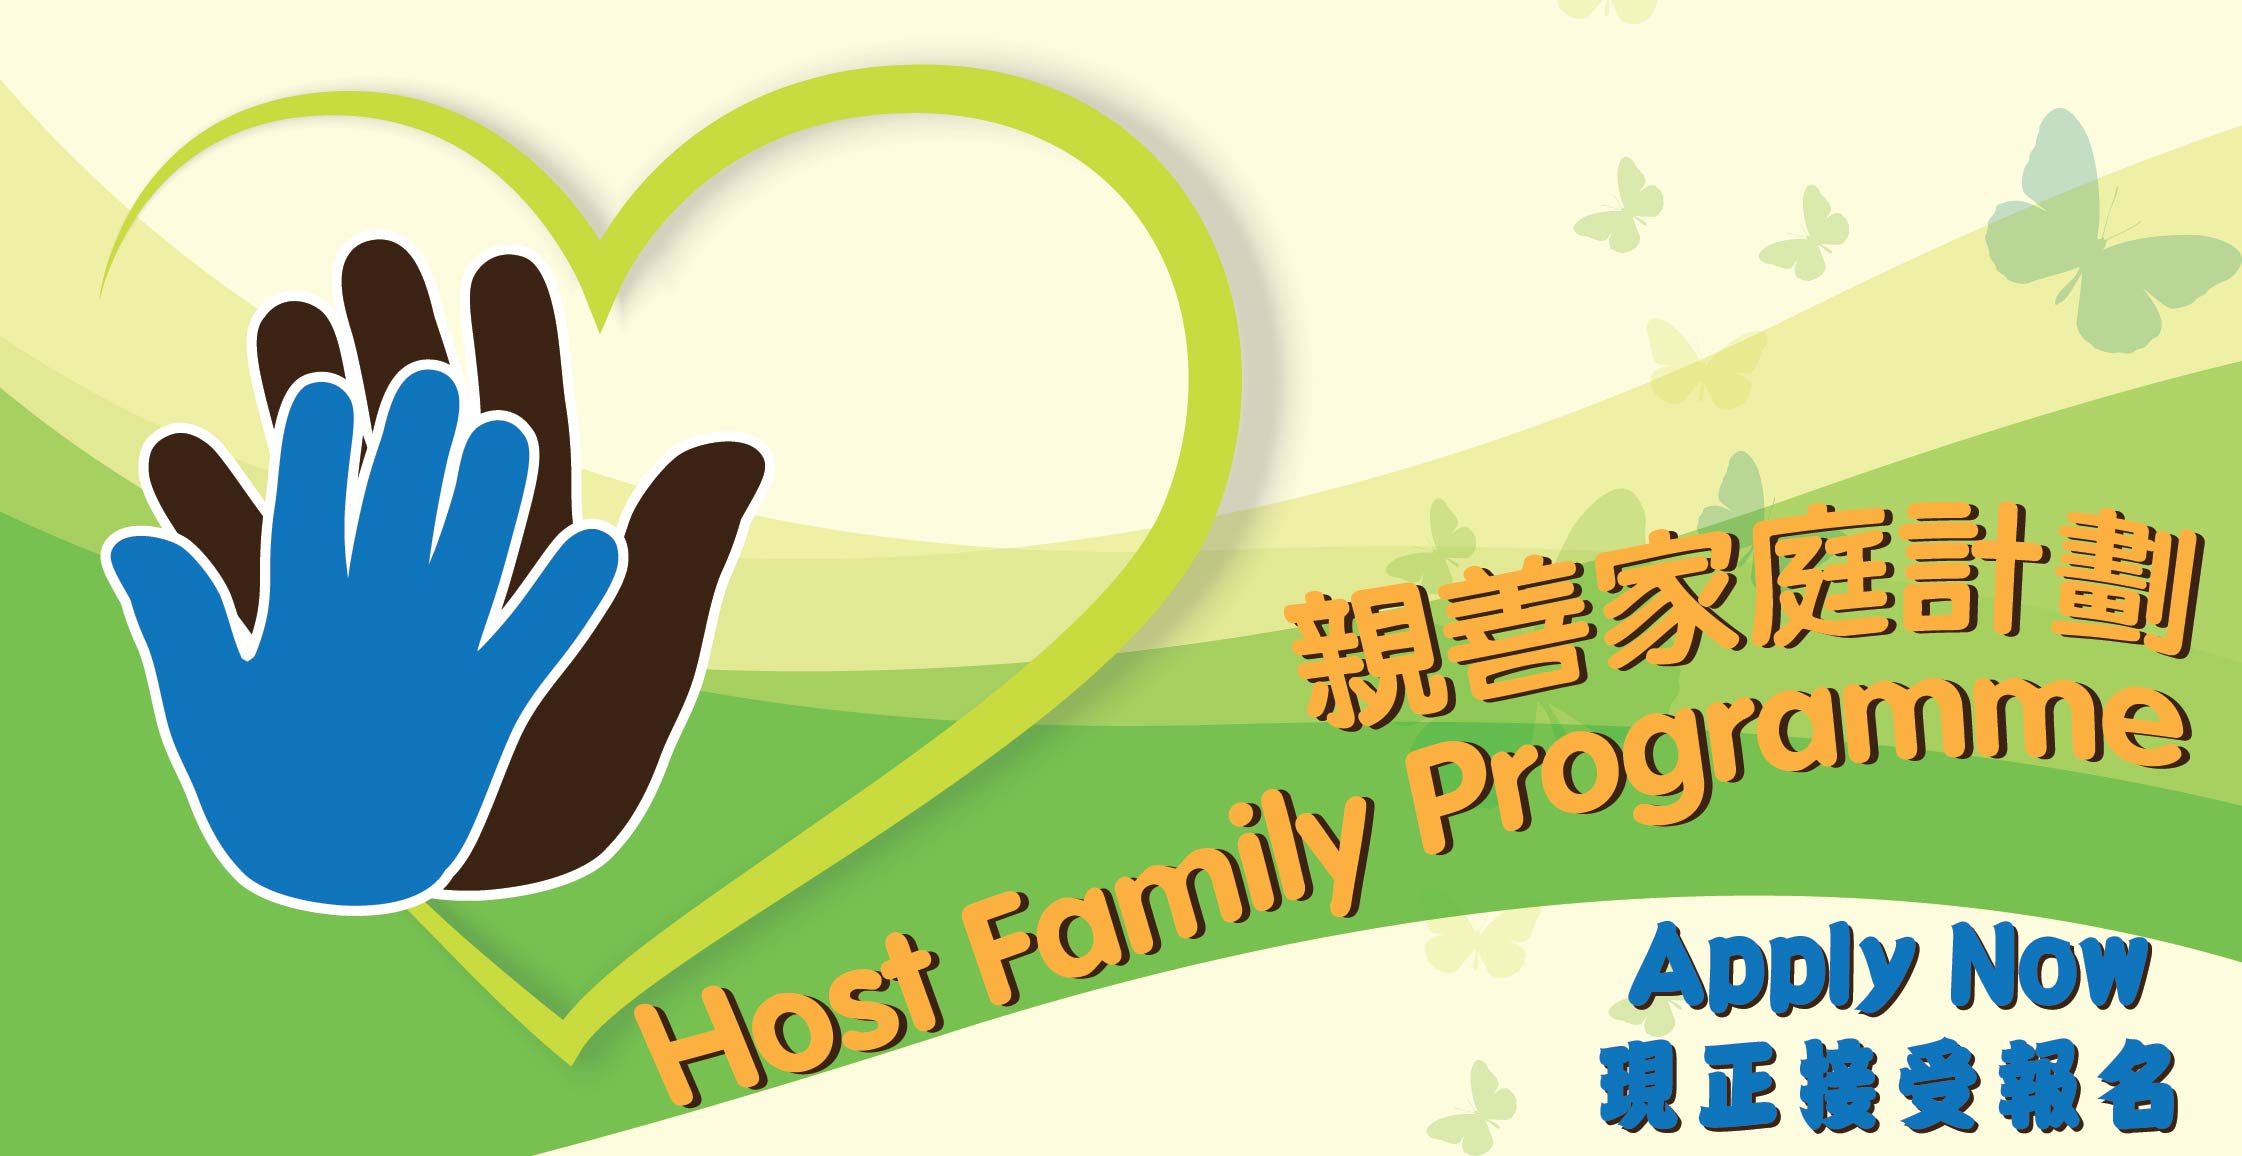 Host Family Programme